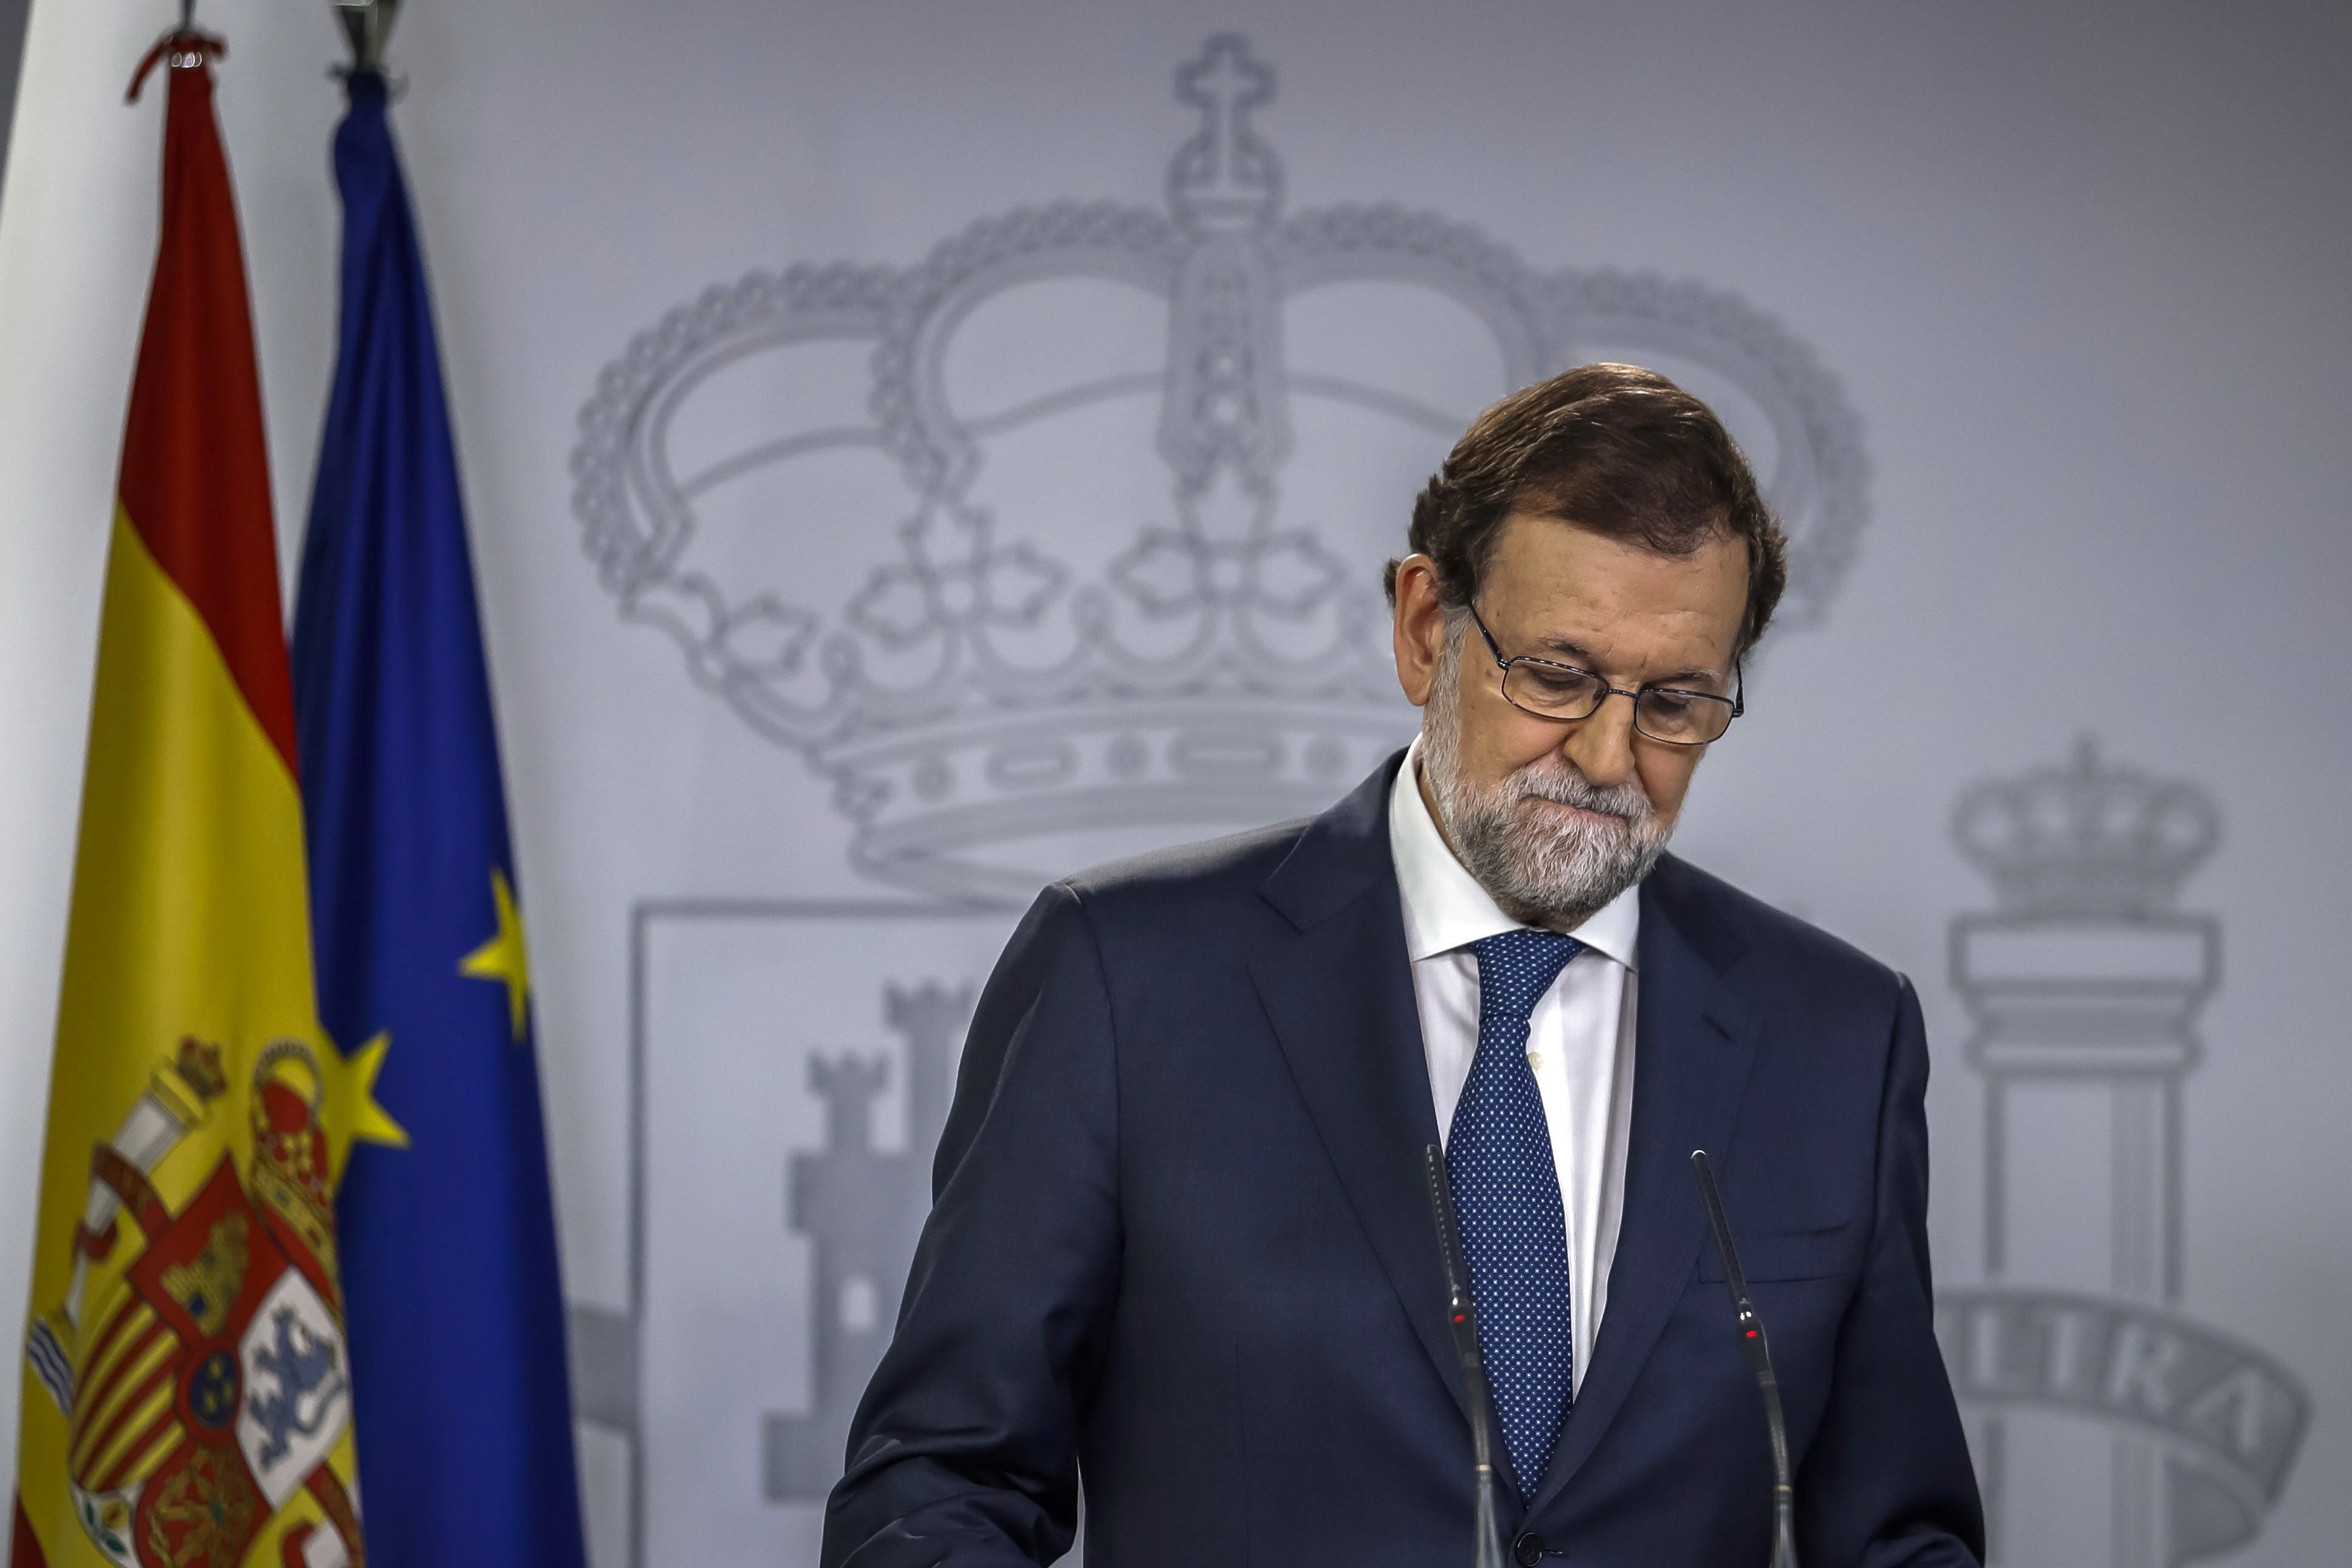 El govern espanyol gira l'esquena a la Diada: "Estava liderada pels més radicals"